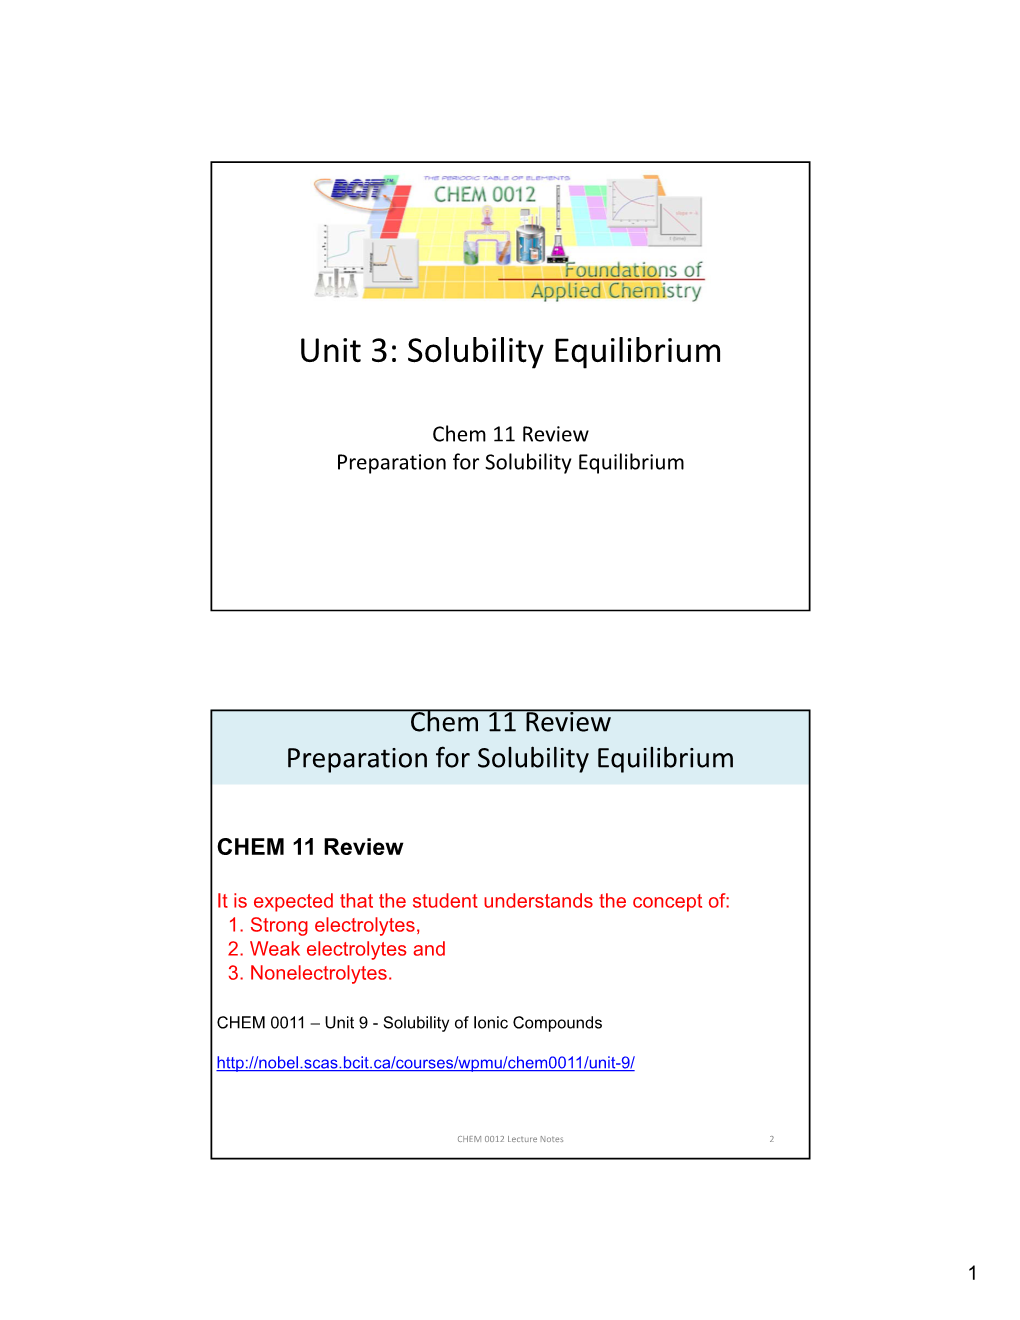 Solubility Equilibrium